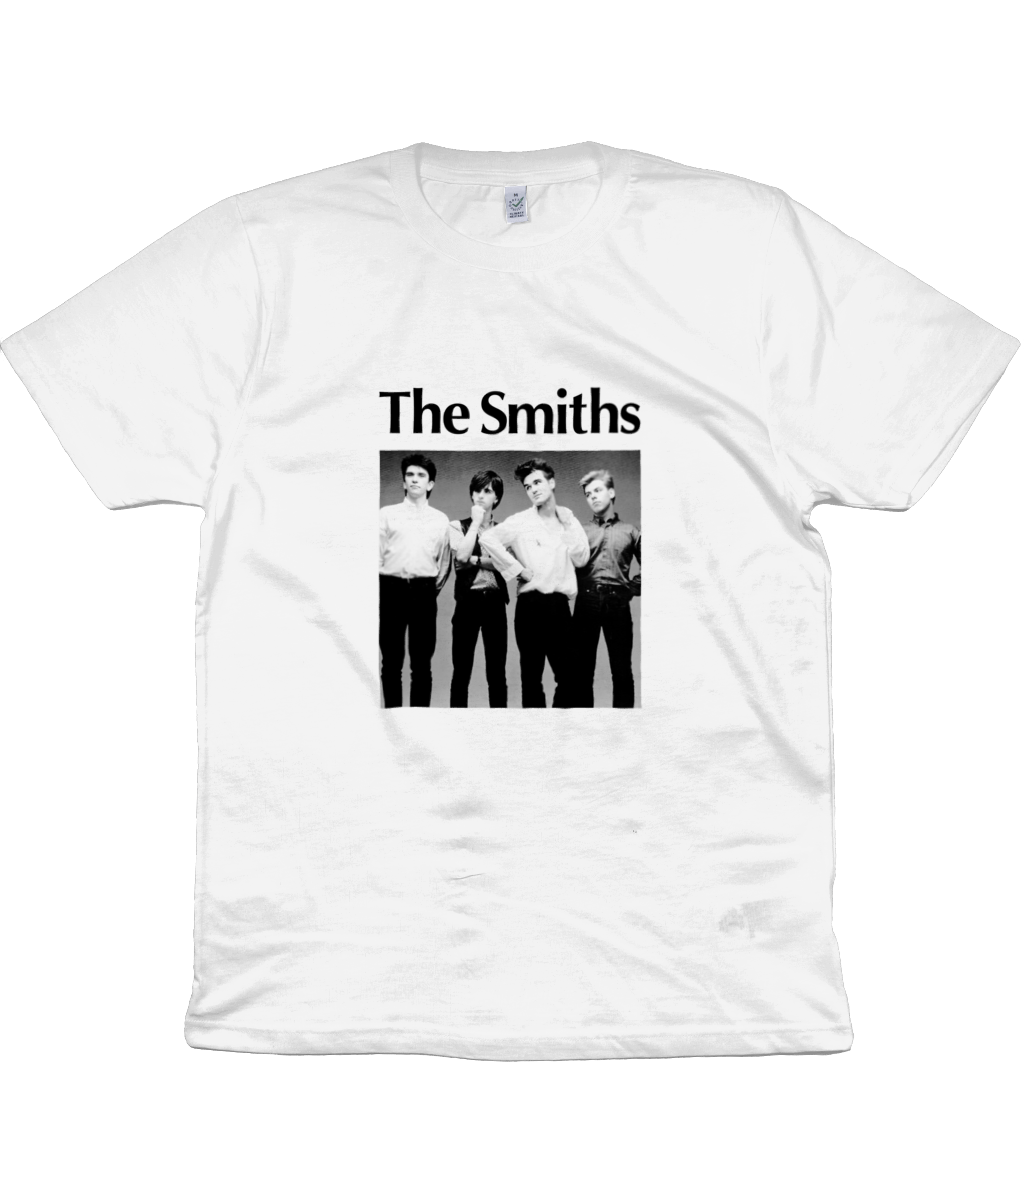 The Smiths - Promo Photo - White Shirt